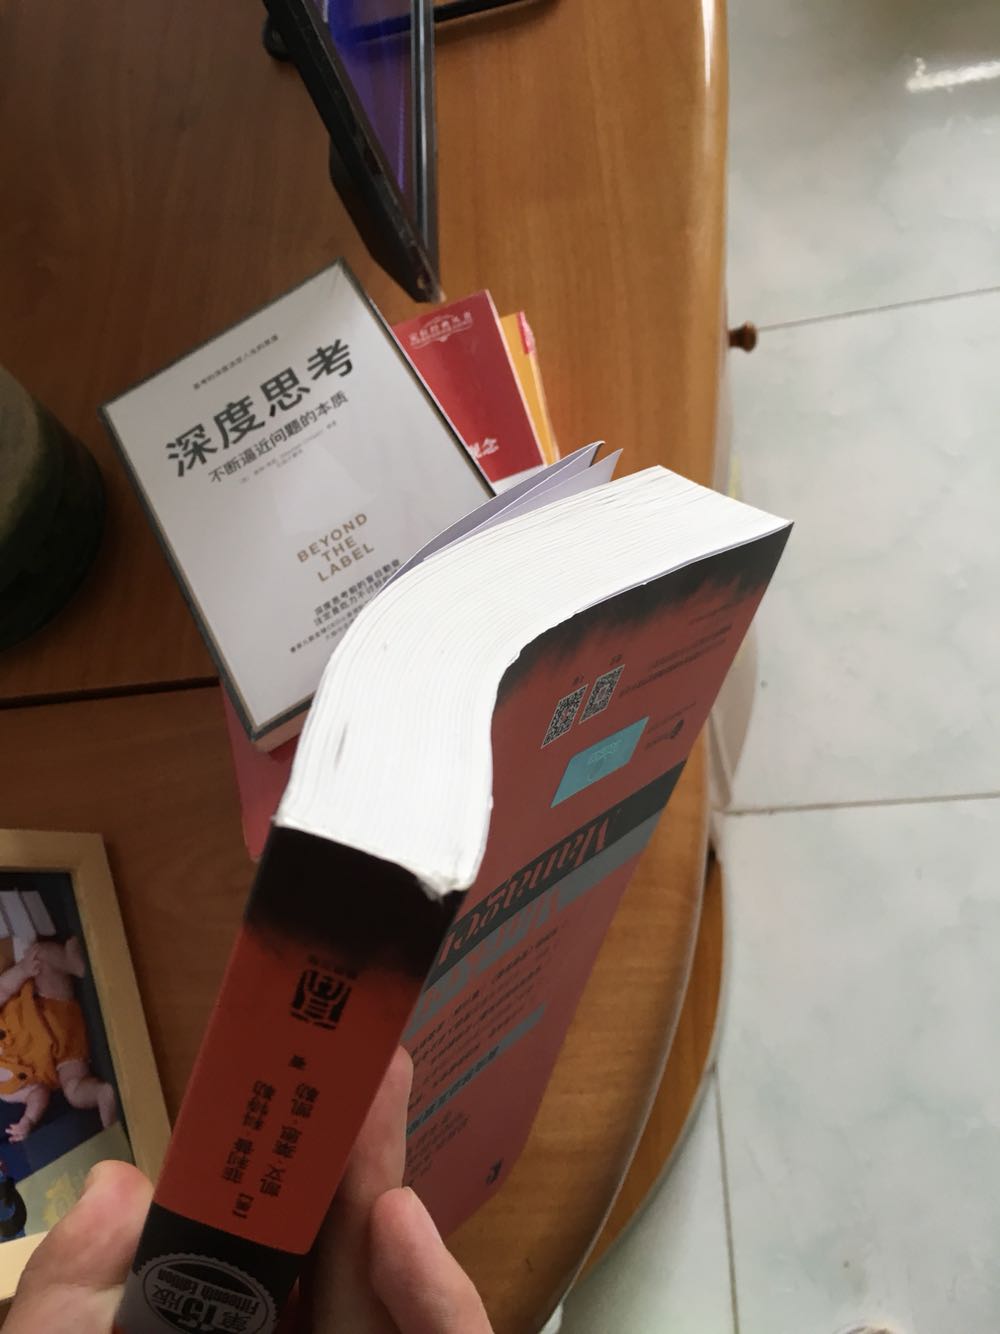 包装一般，盒子变形，书角有折损。